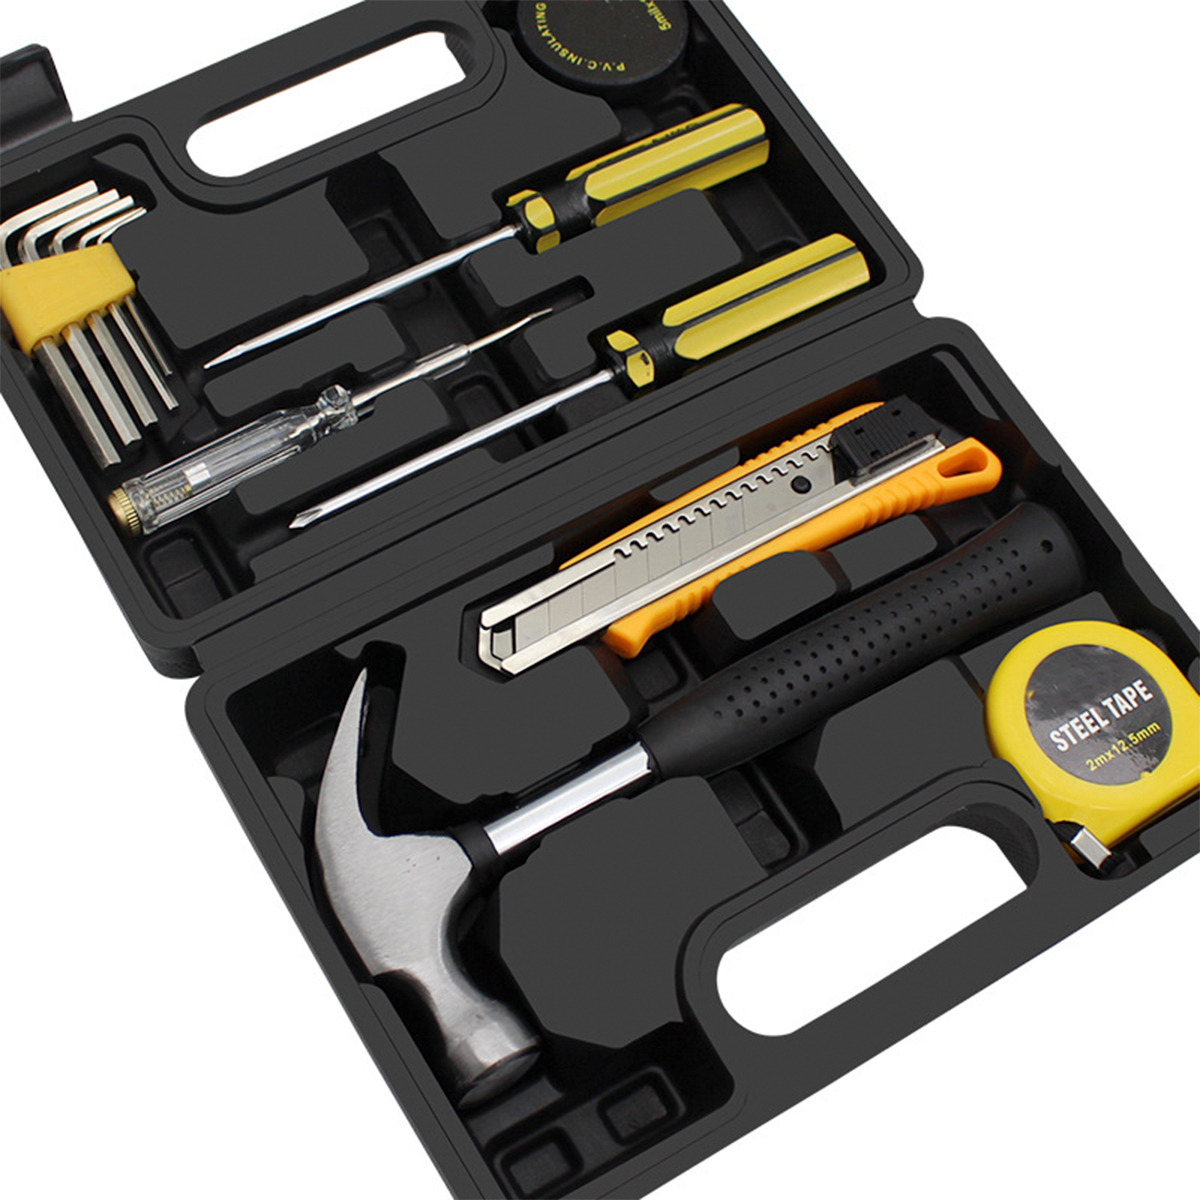 12 pçs pequeno conjunto de ferramentas domésticas kit de ferramentas manuais para uso doméstico com caixa de ferramentas de plástico estojo de armazenamento